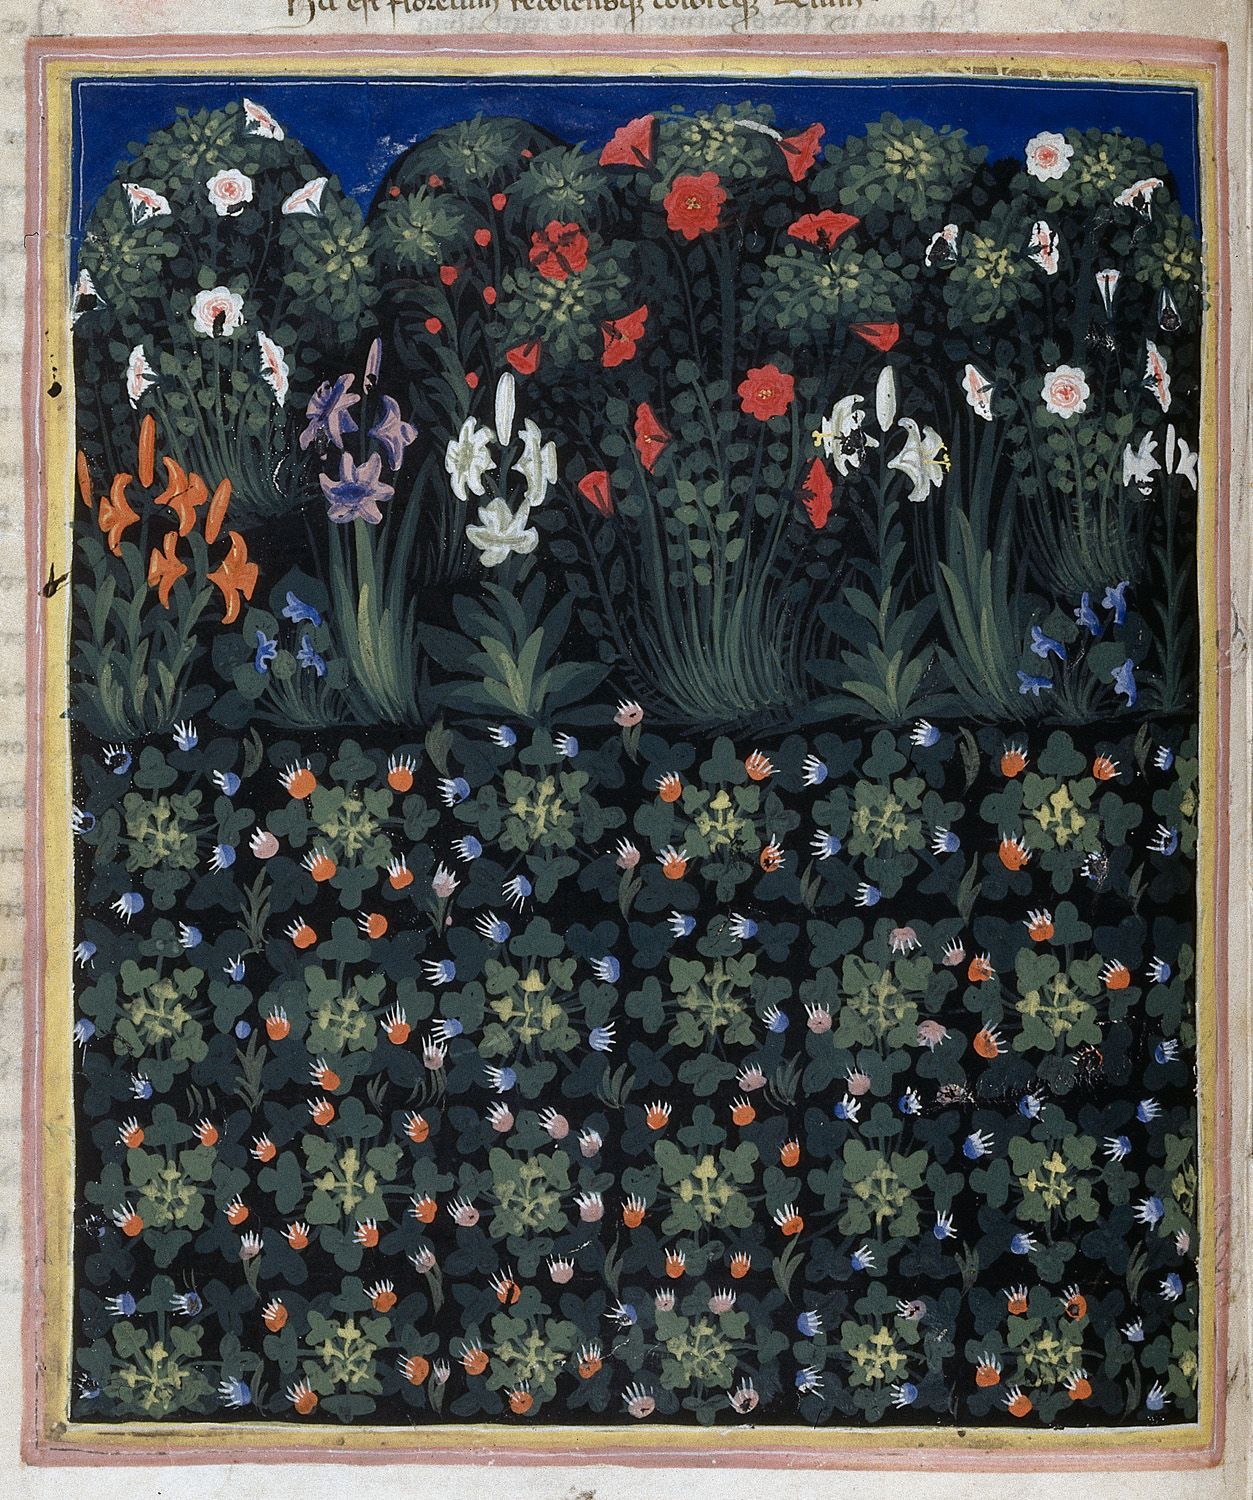 Zahrada by Pacino di Buonaguida - 1335-1340 - 49 x 35 cm 